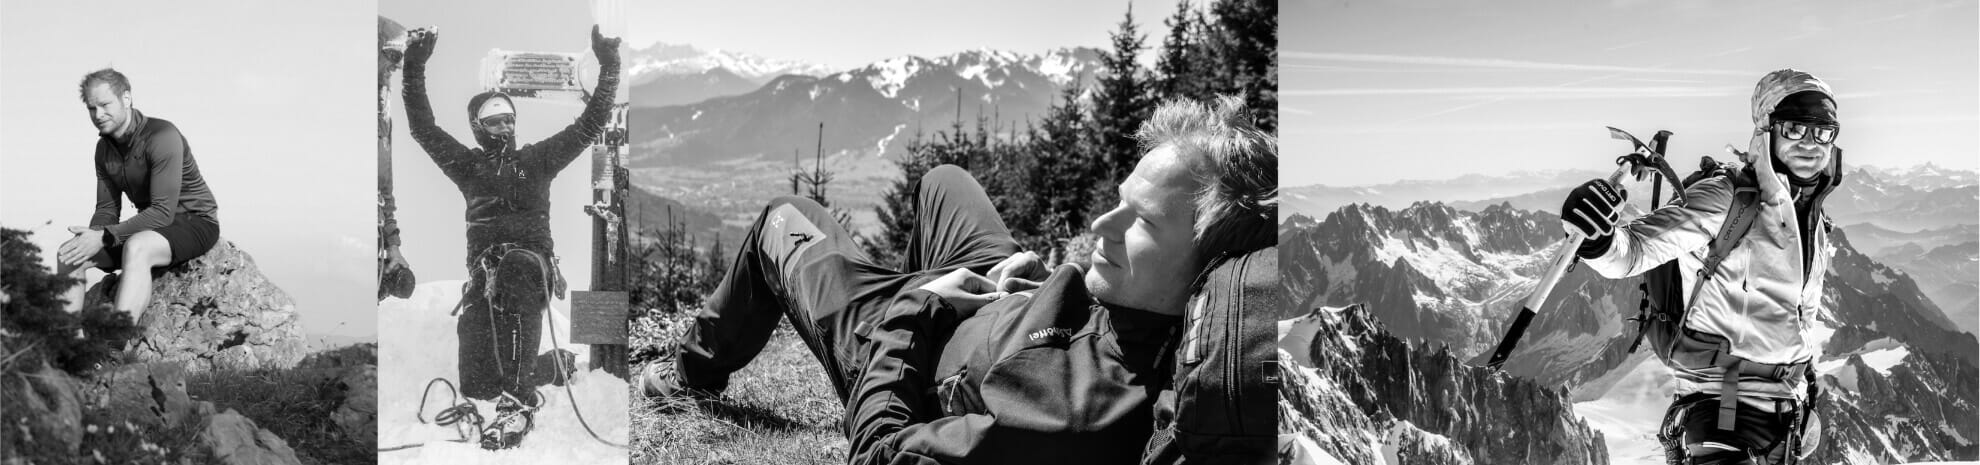 Portraitfotos in schwarz/weis von einem Bergsteiger